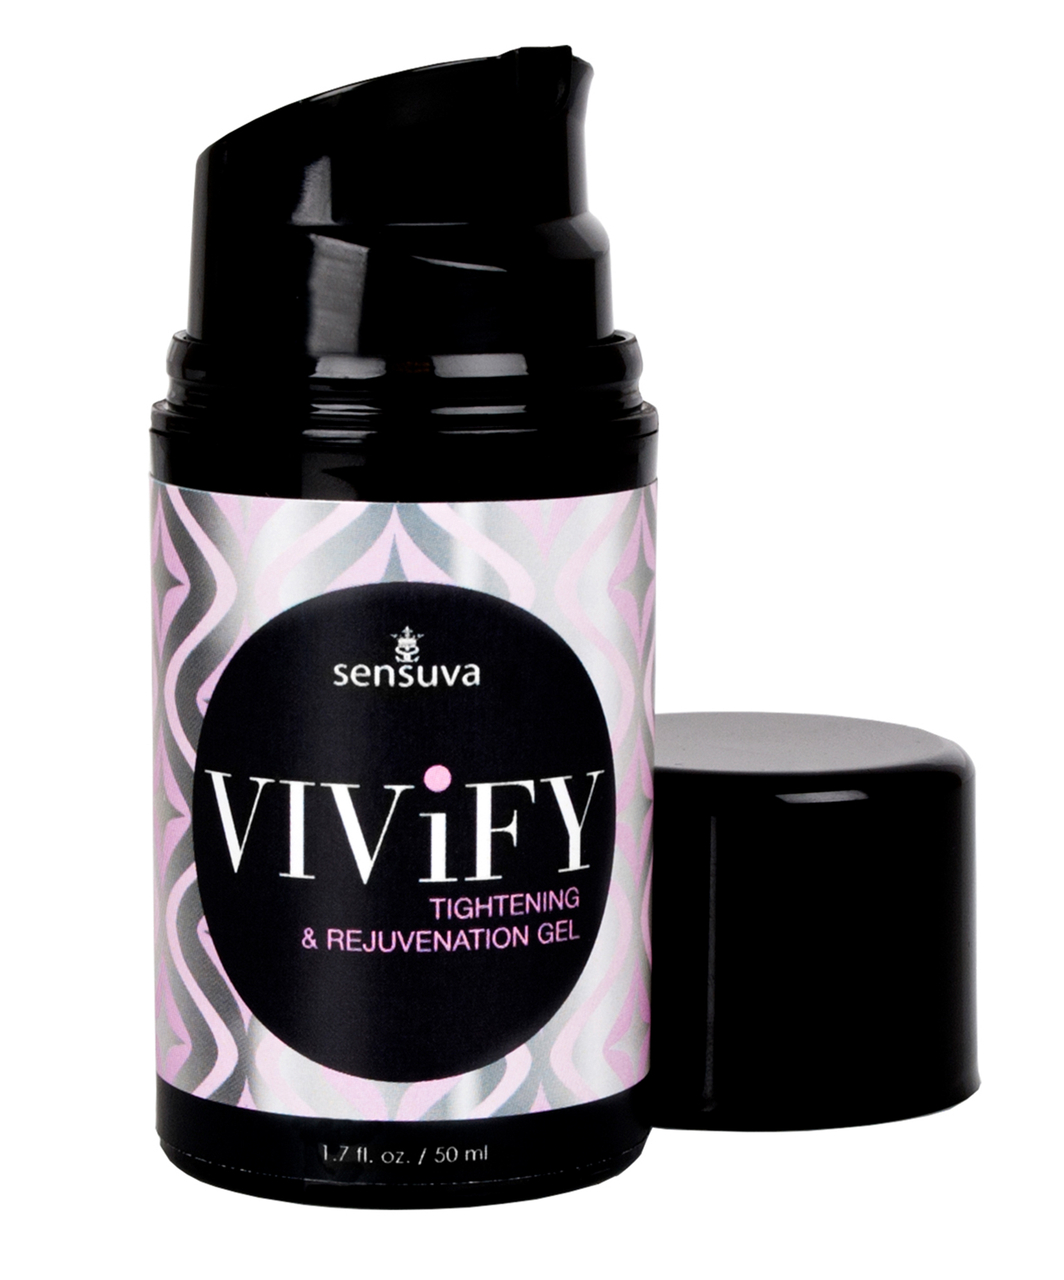 Sensuva VIViFY вагинальный гель со стягивающим свойством (50 мл)